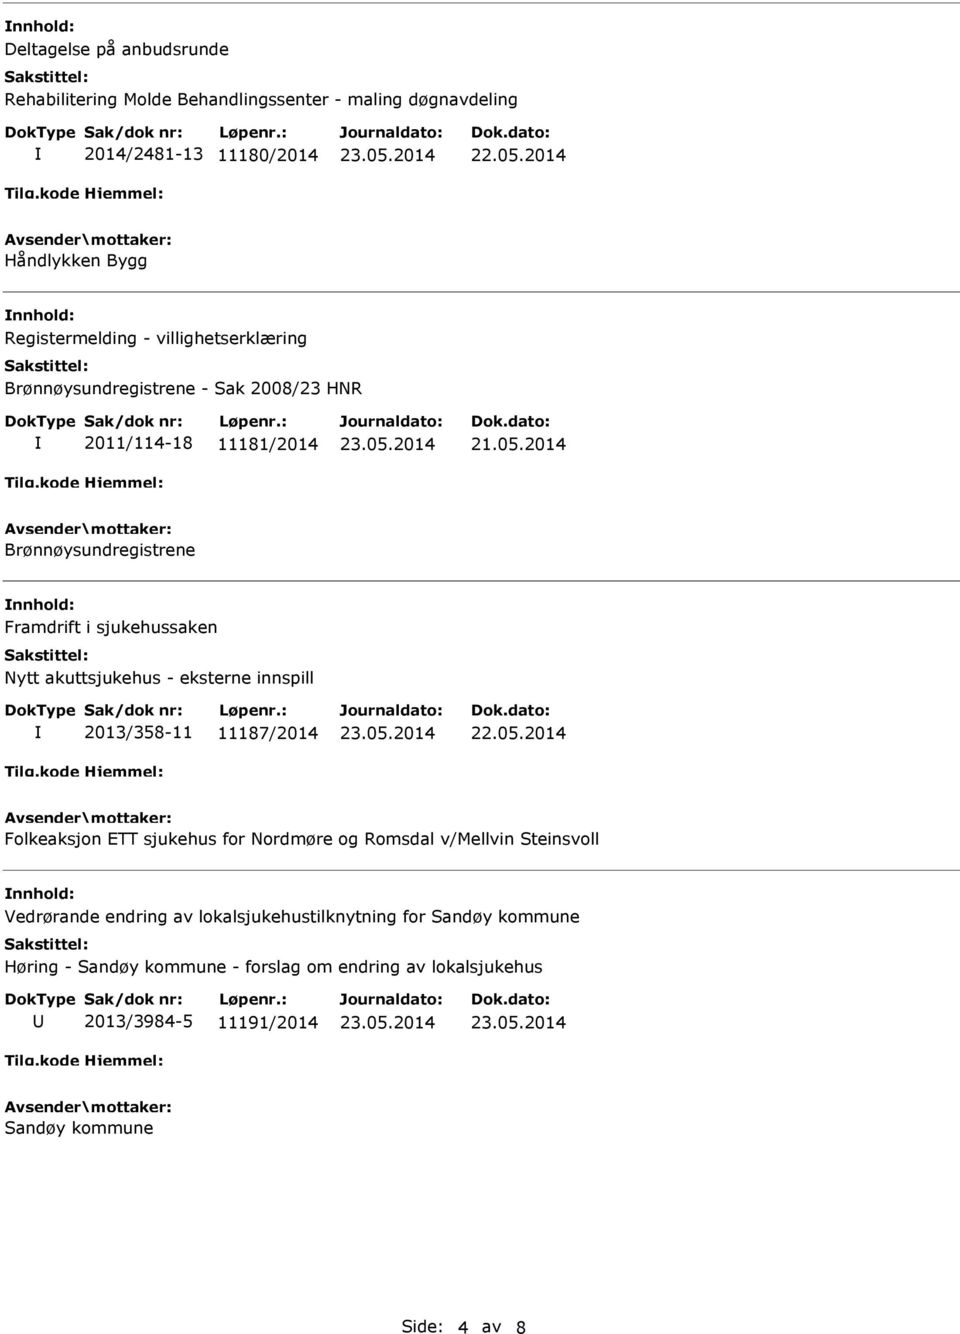 akuttsjukehus - eksterne innspill 2013/358-11 11187/2014 Folkeaksjon ETT sjukehus for Nordmøre og Romsdal v/mellvin Steinsvoll Vedrørande endring